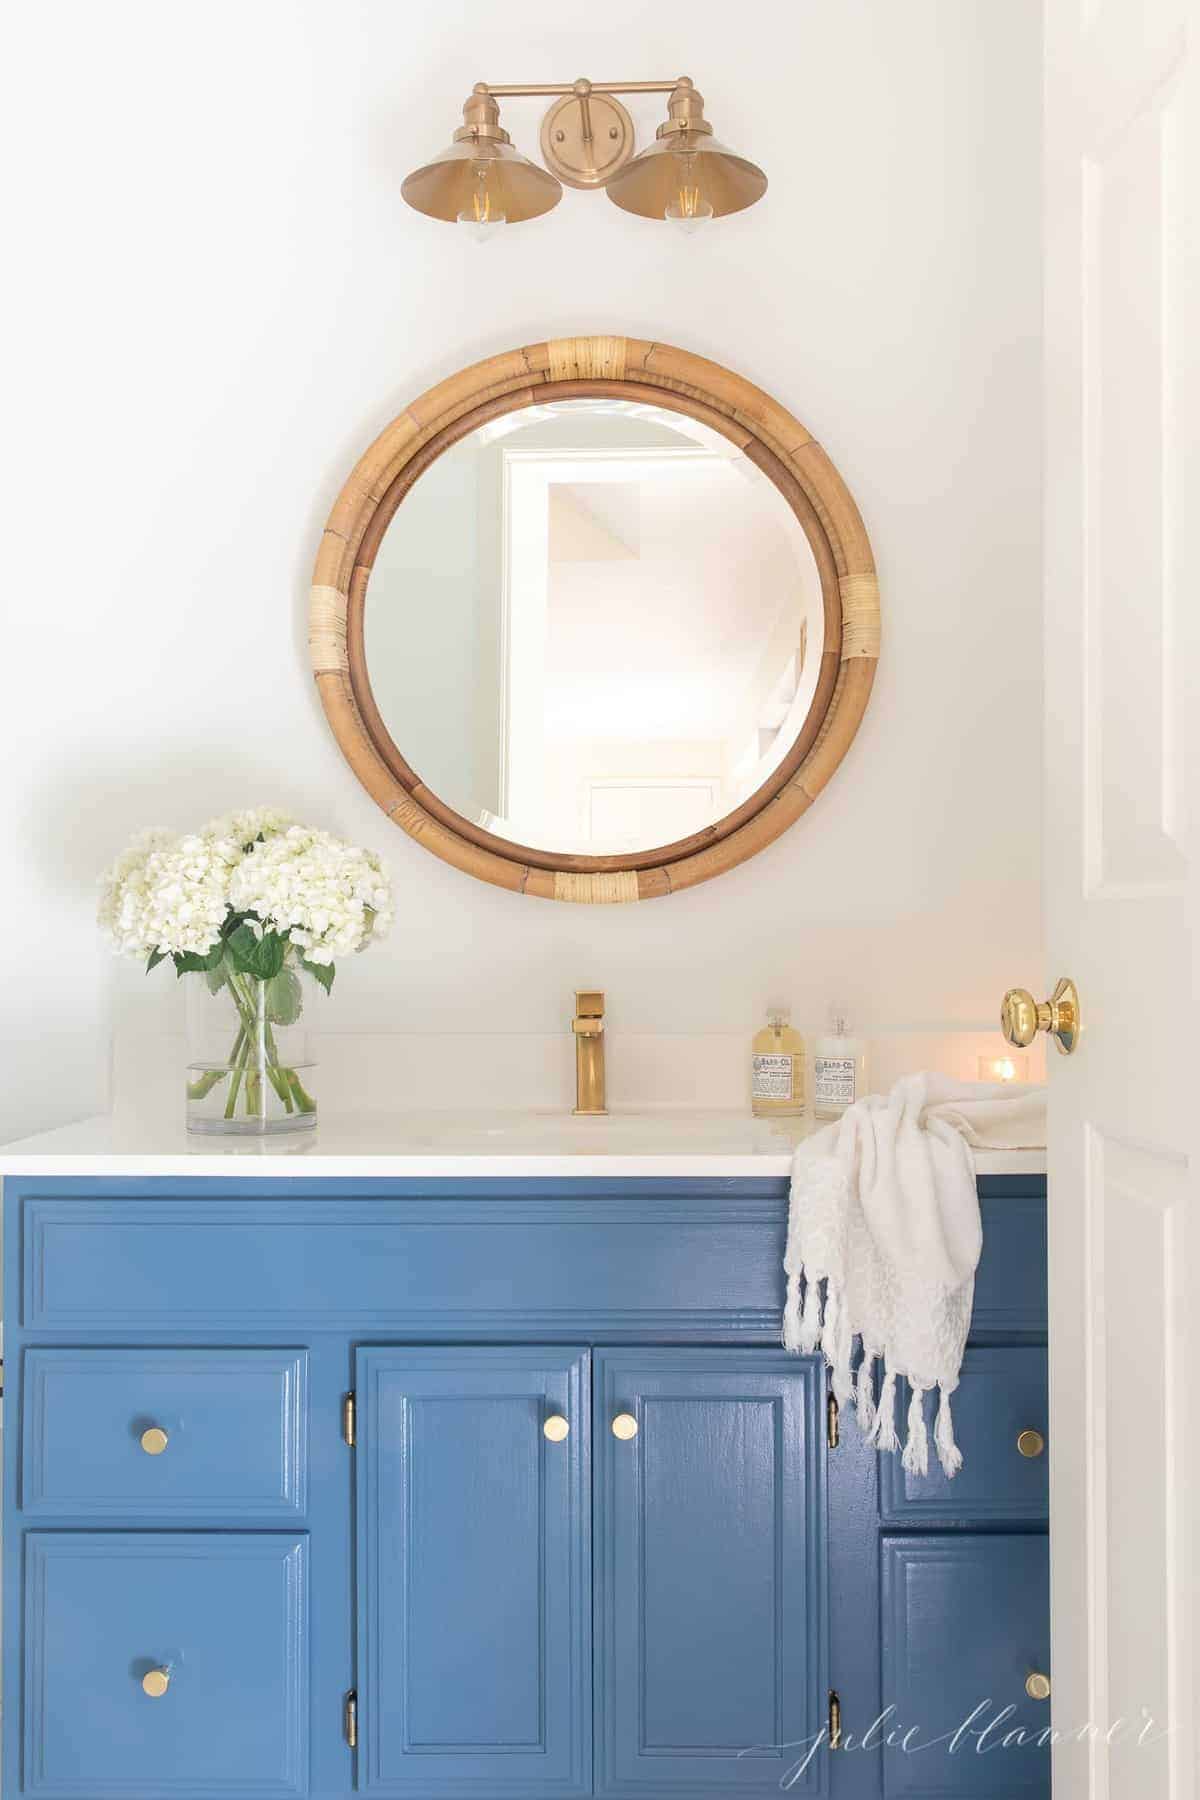 航海浴室，蓝色虚荣黄铜水龙头，圆藤镜子，鲜花和手巾